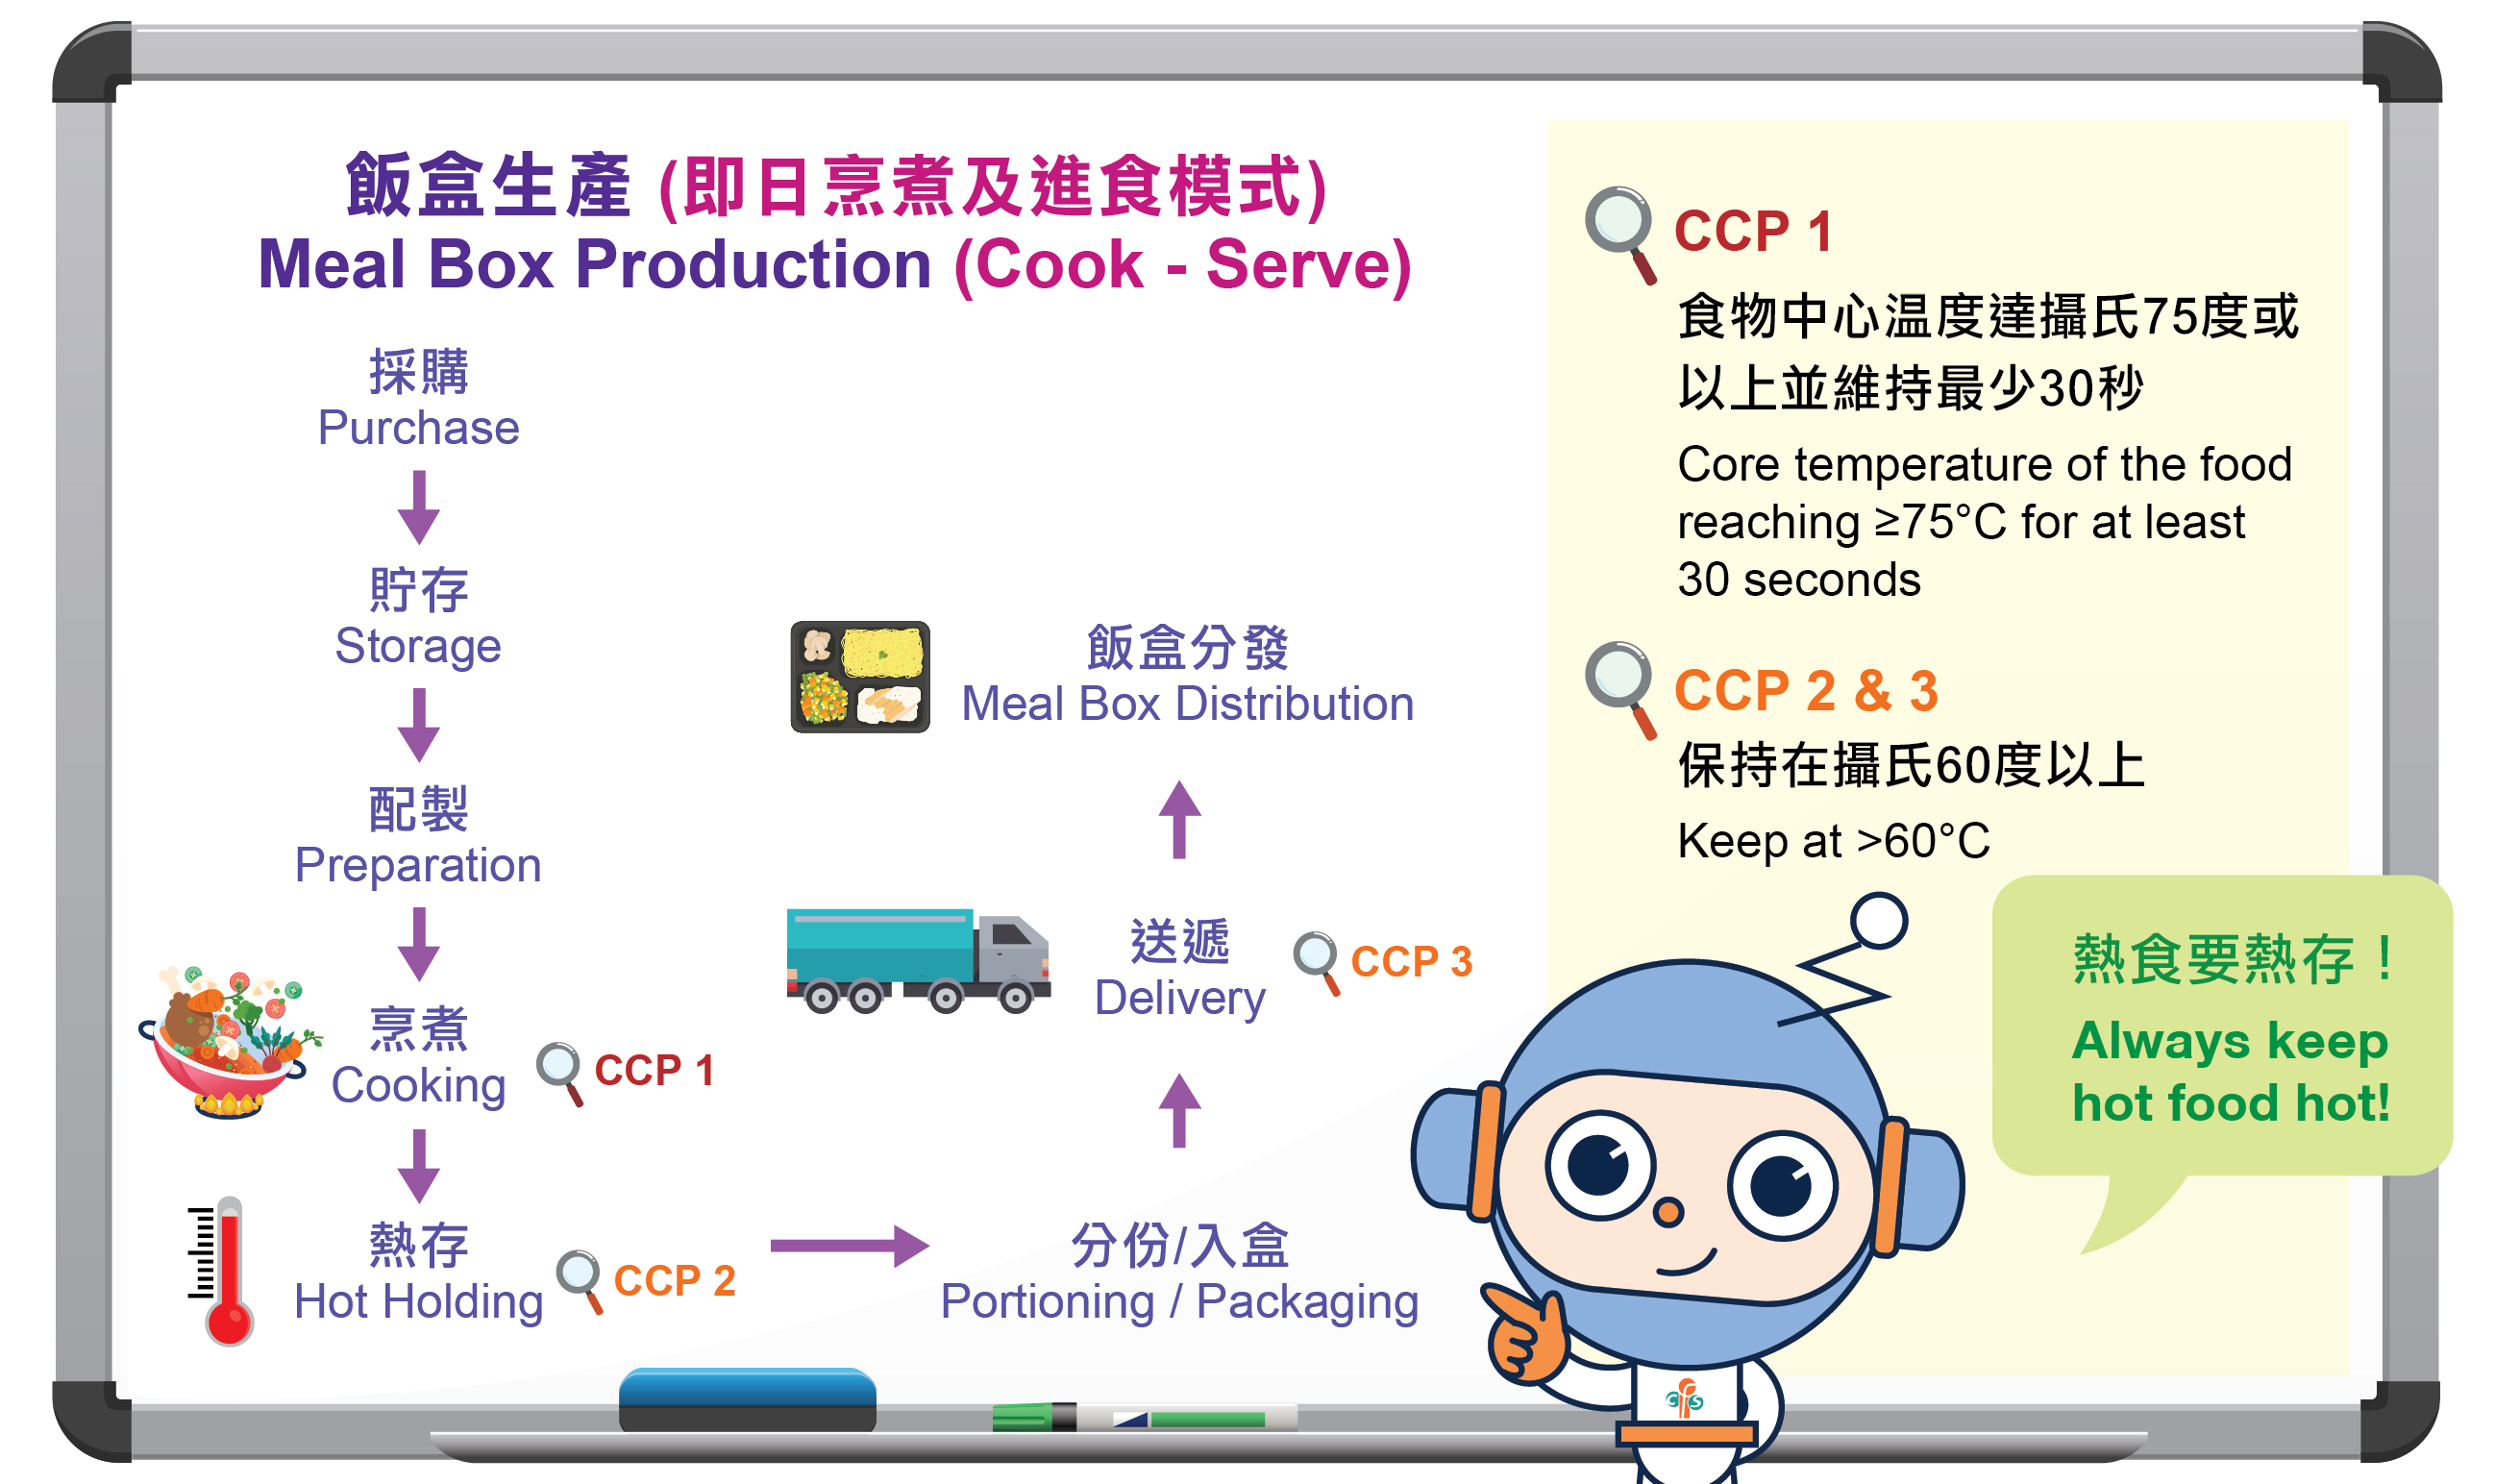 饭盒生产流程图及控制重点(CCP)